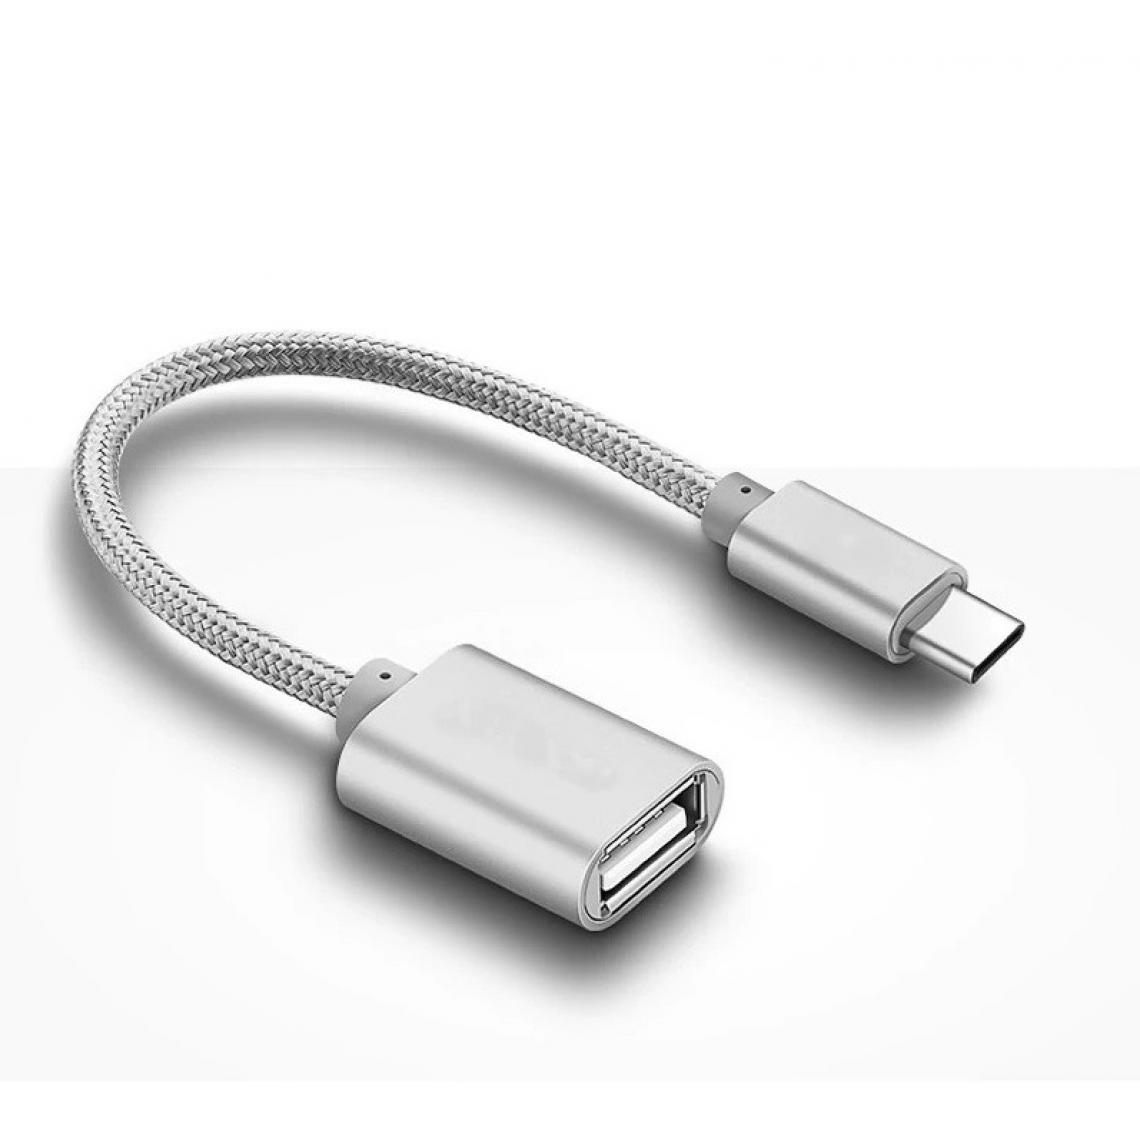 Shot - Adaptateur Type C/USB pour MEIZU Pro 6 Smartphone & MAC USB-C Clef (ARGENT) - Autres accessoires smartphone